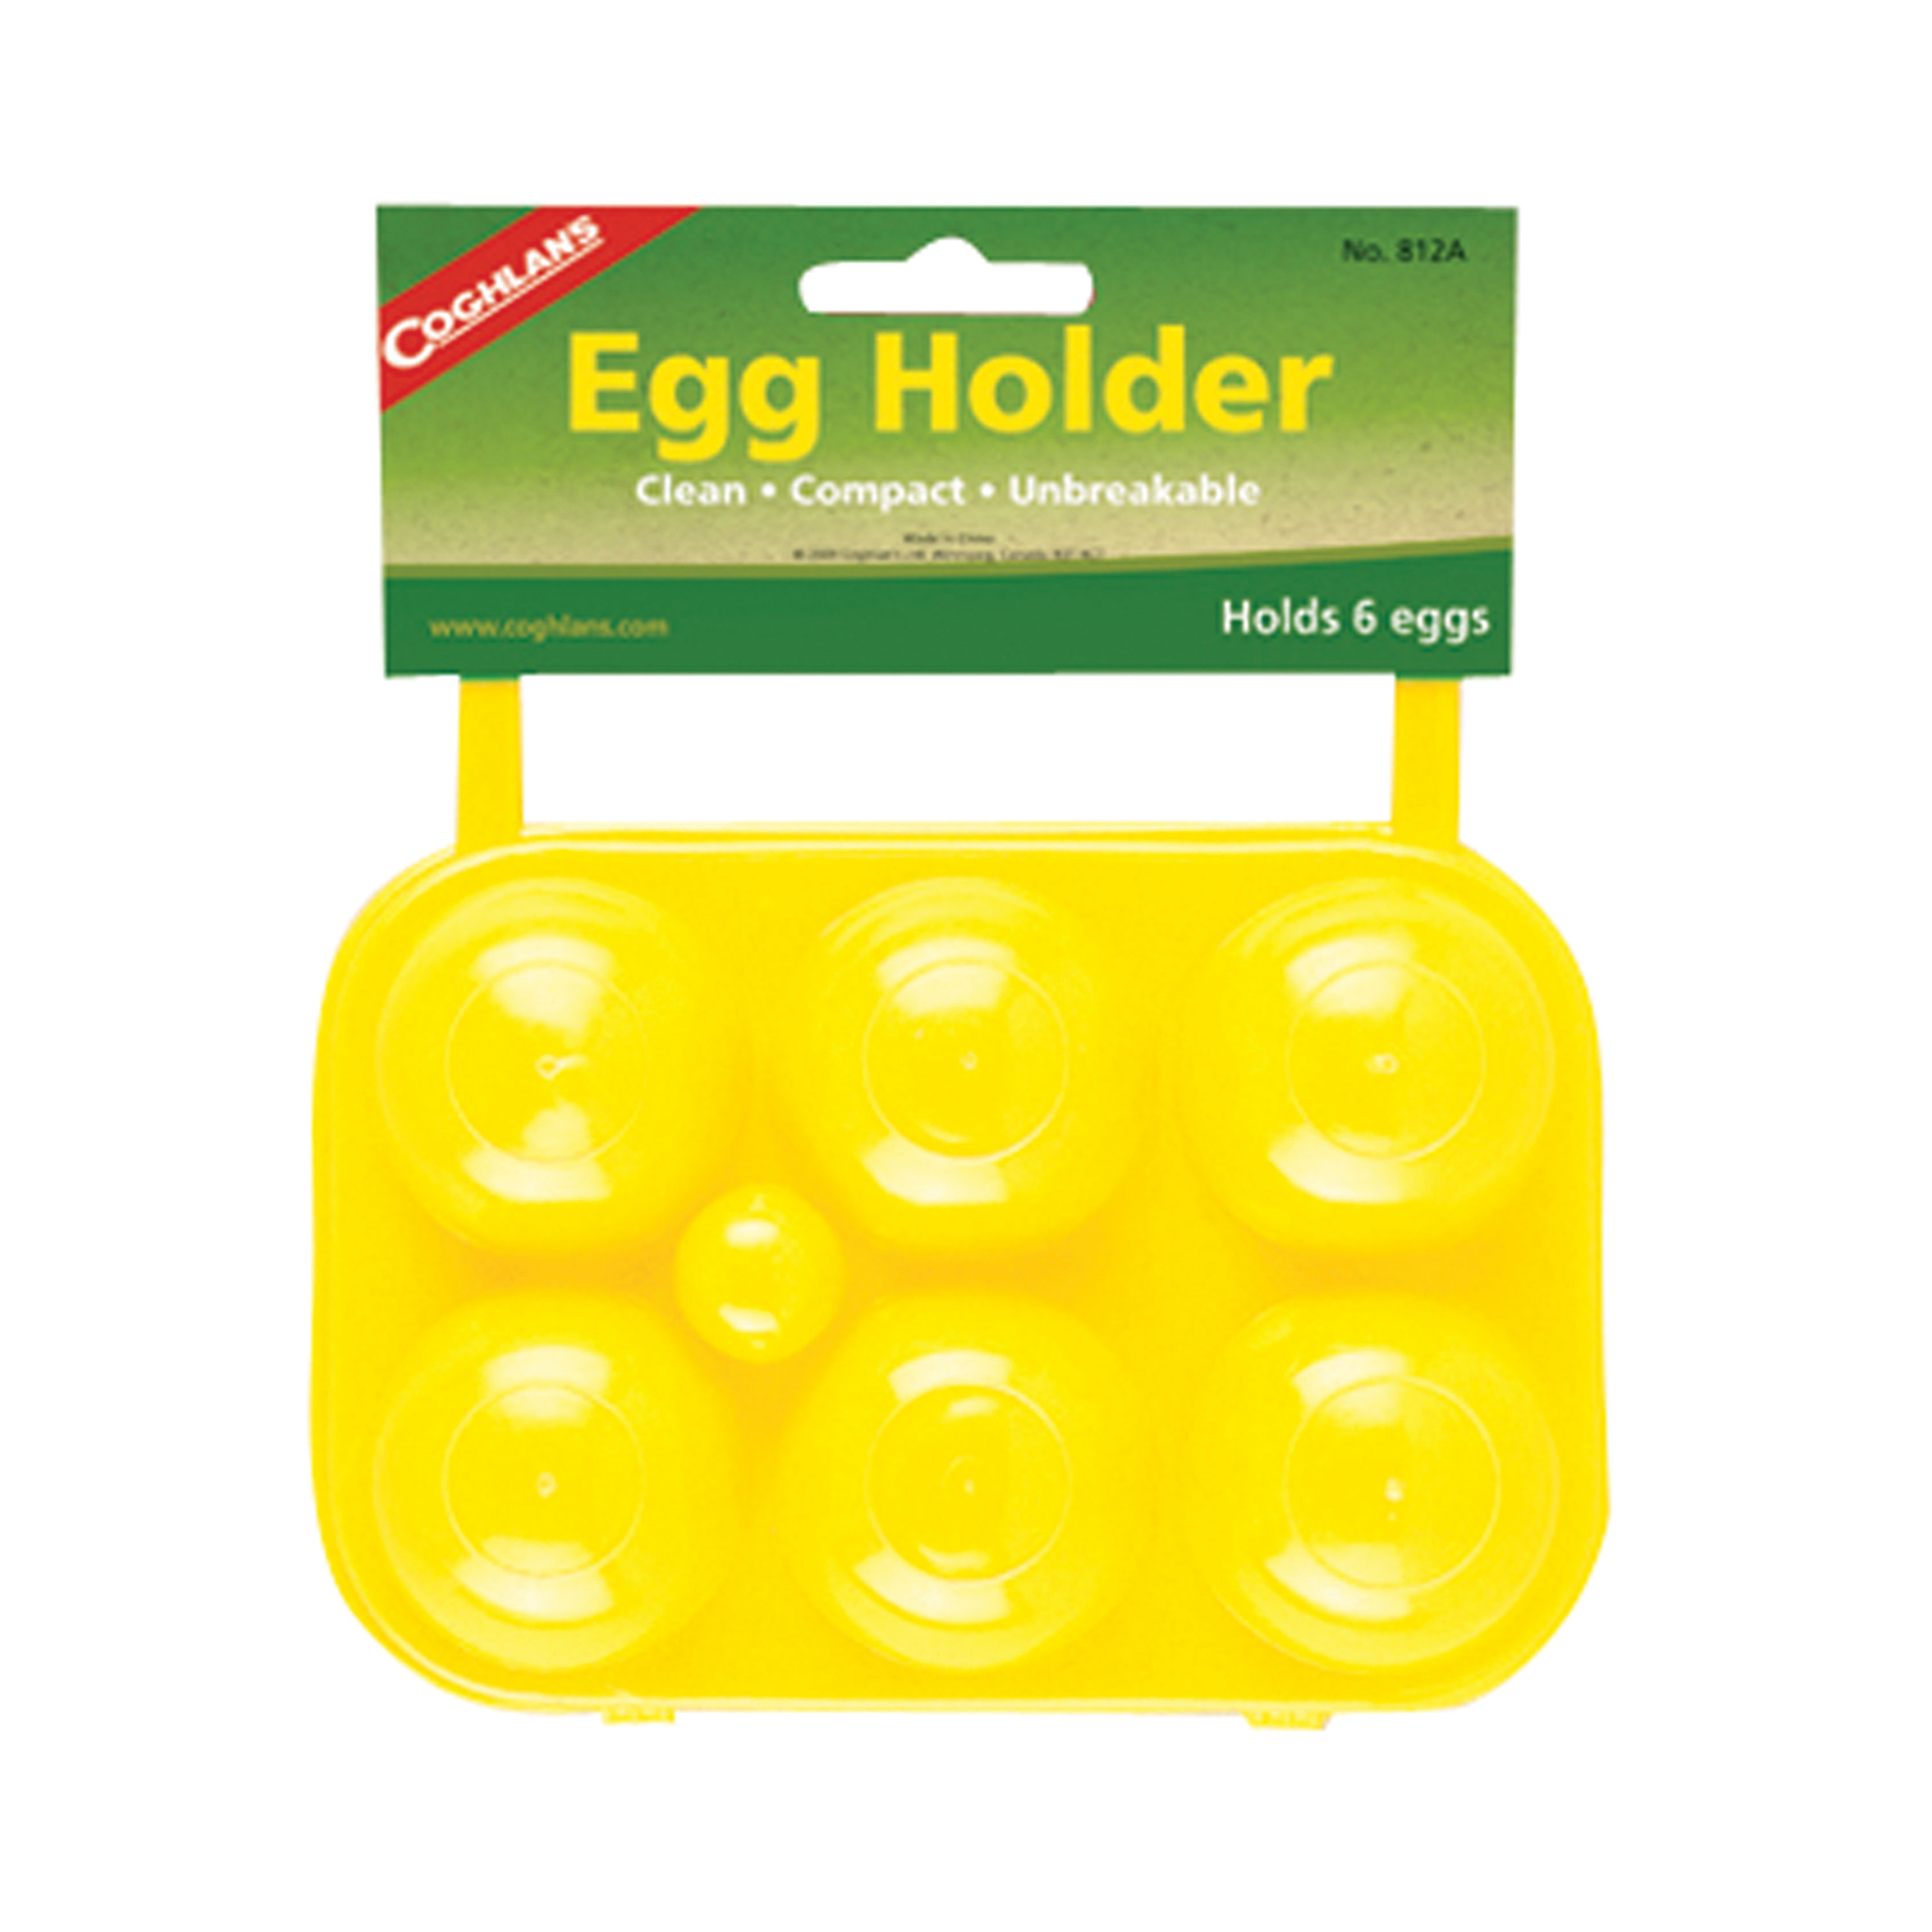 Coghlan'S 812A Egg Holder - 6 Eggs - image 1 of 2